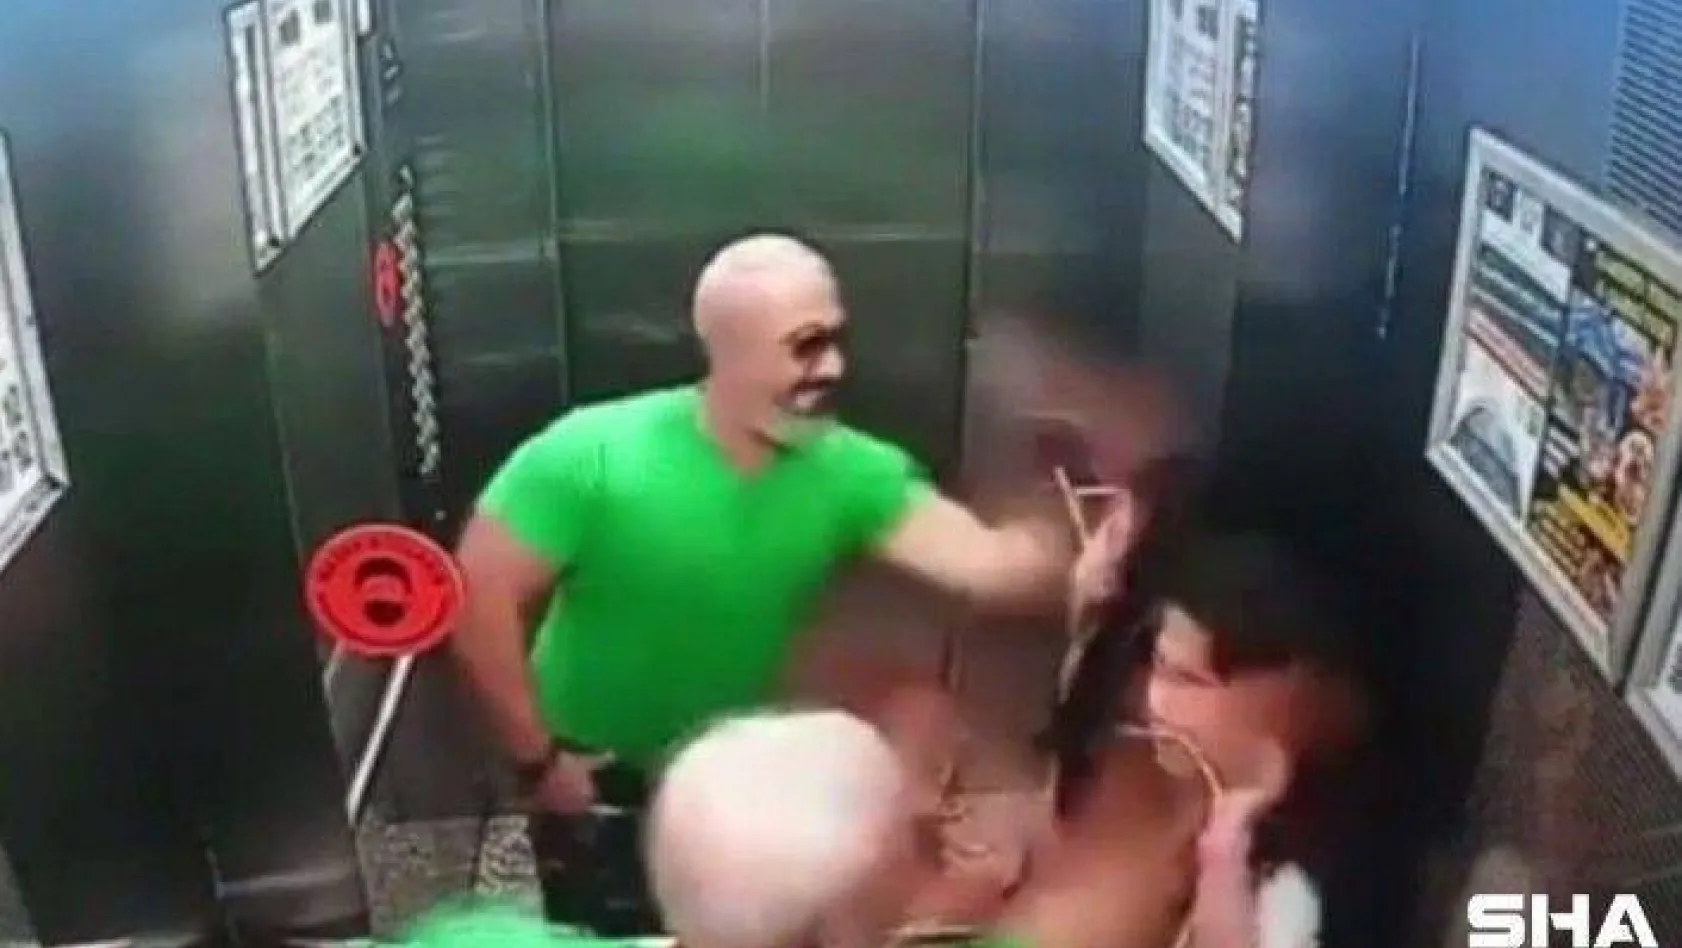 (ÖZEL) Kızına attığı tokat asansör aynasını çatlattı